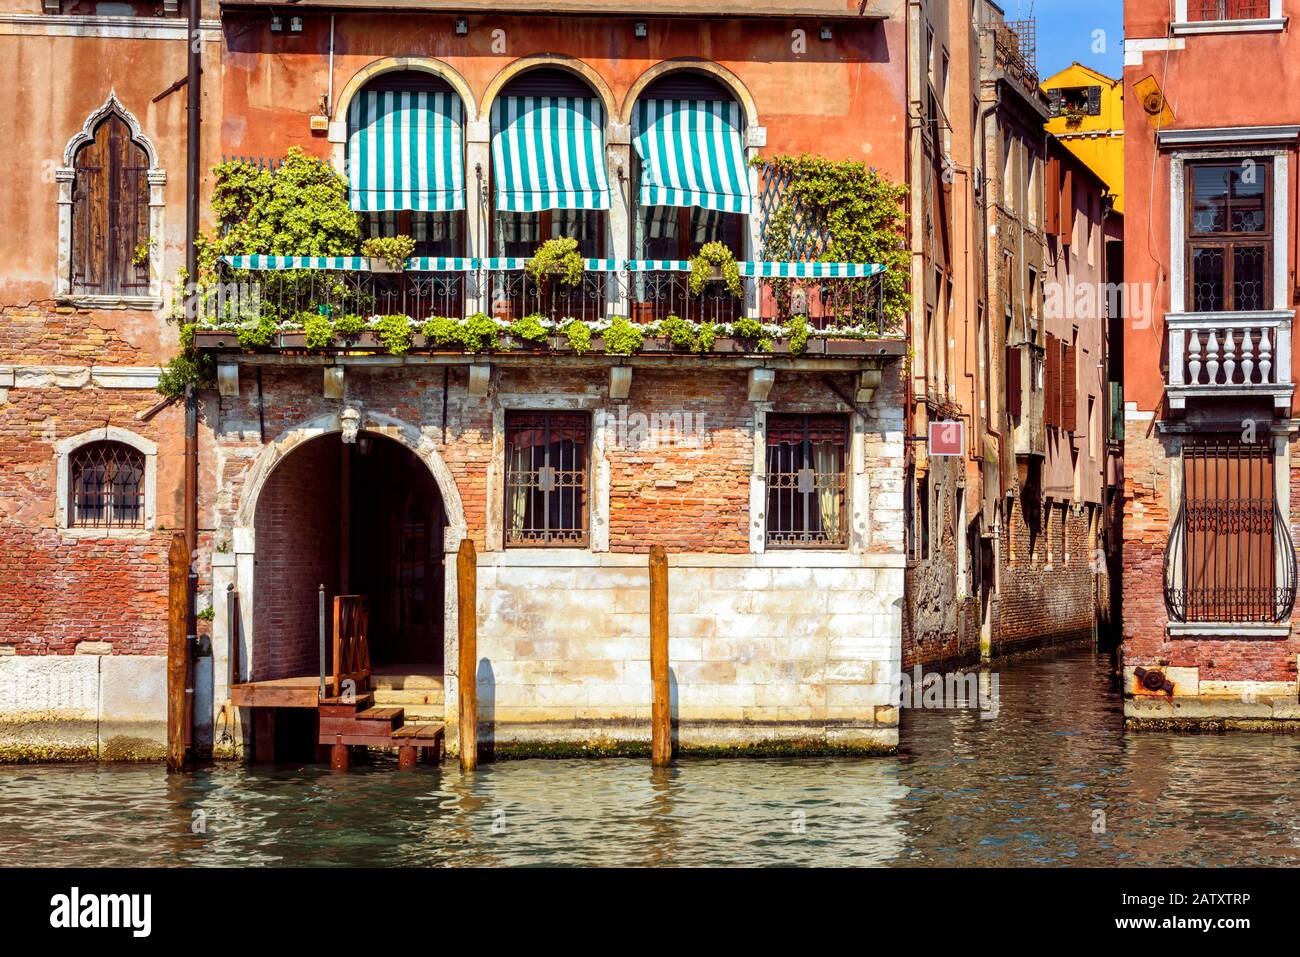 Vintage-Haus, Venedig, Italien. Eingang zum Wohnhaus oder Hotel am Canal Grande, der berühmten Straße von Venedig. Altes Gebäude auf dem Wasser, traditionelle Aussicht Stockfoto